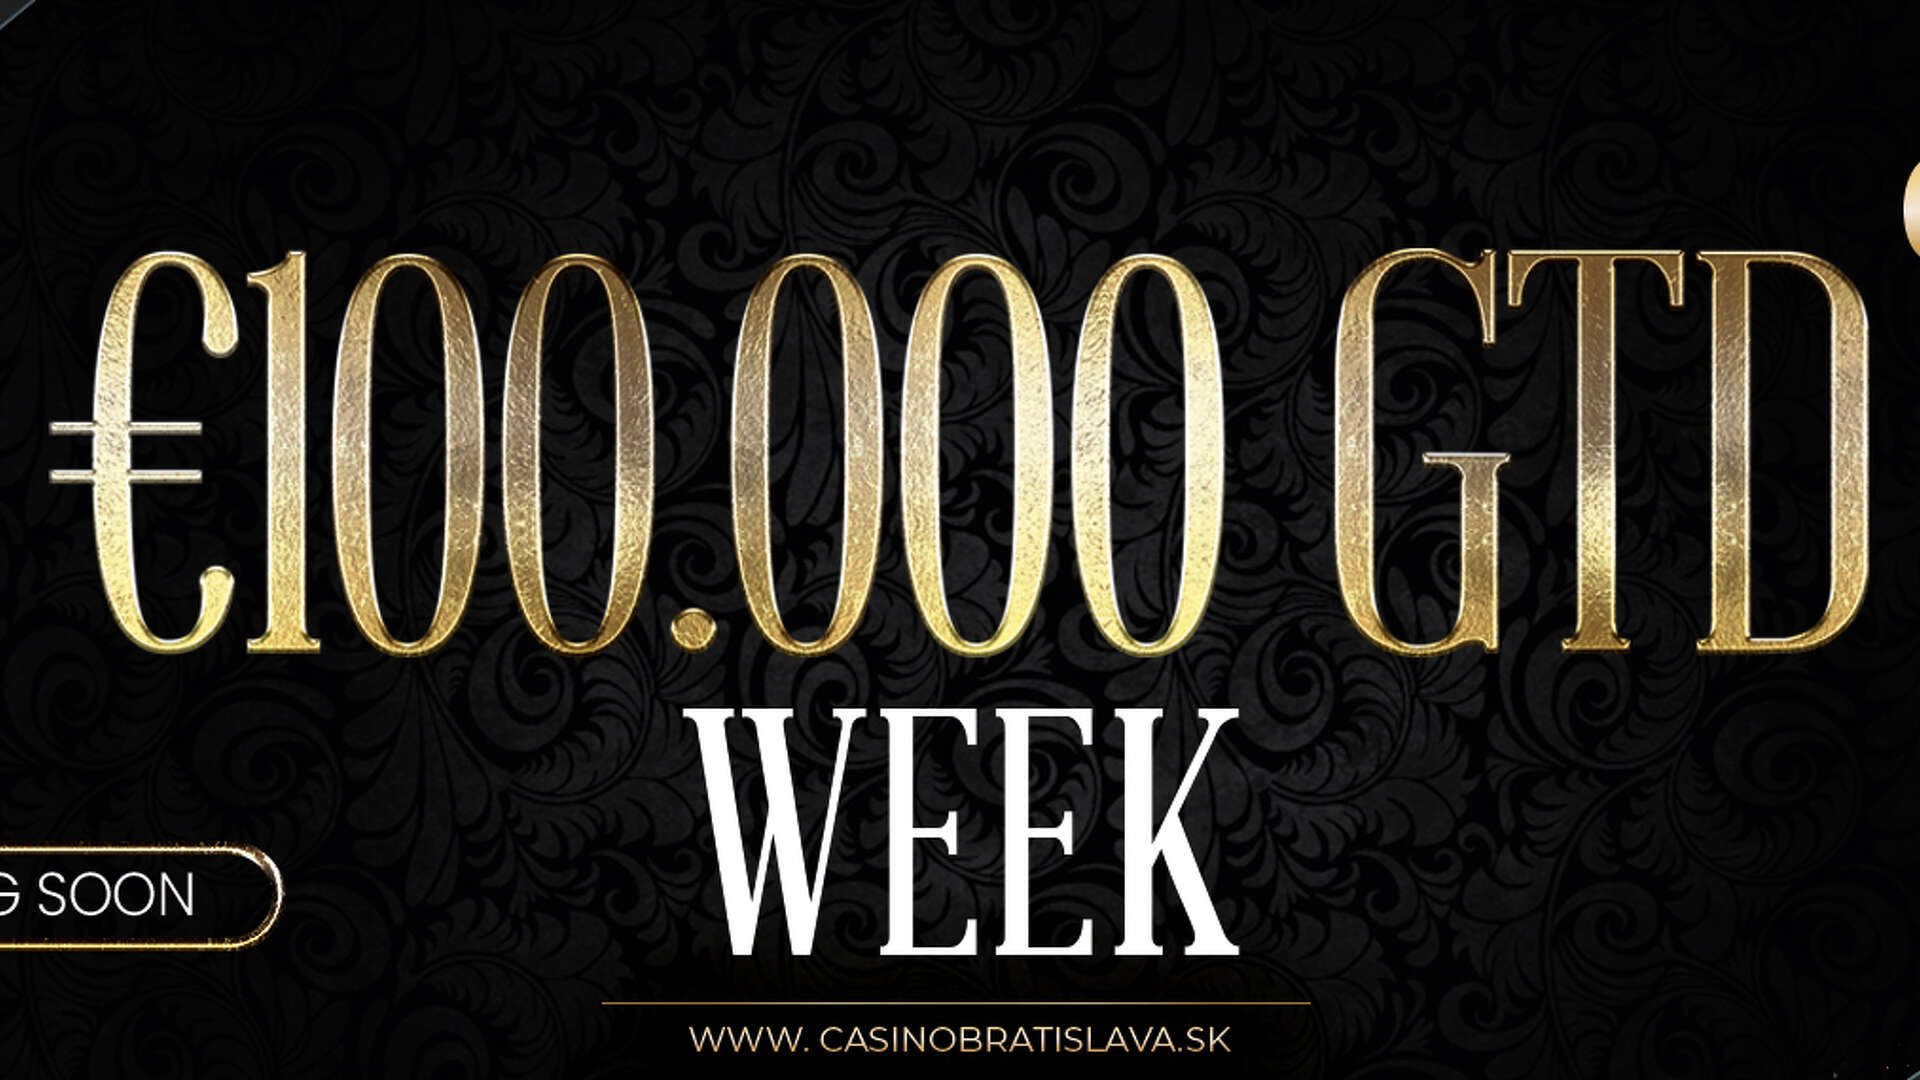 Dva turnaje, 100.000€ garancia! To je hviezdny týždeň v Casino Bratislava 